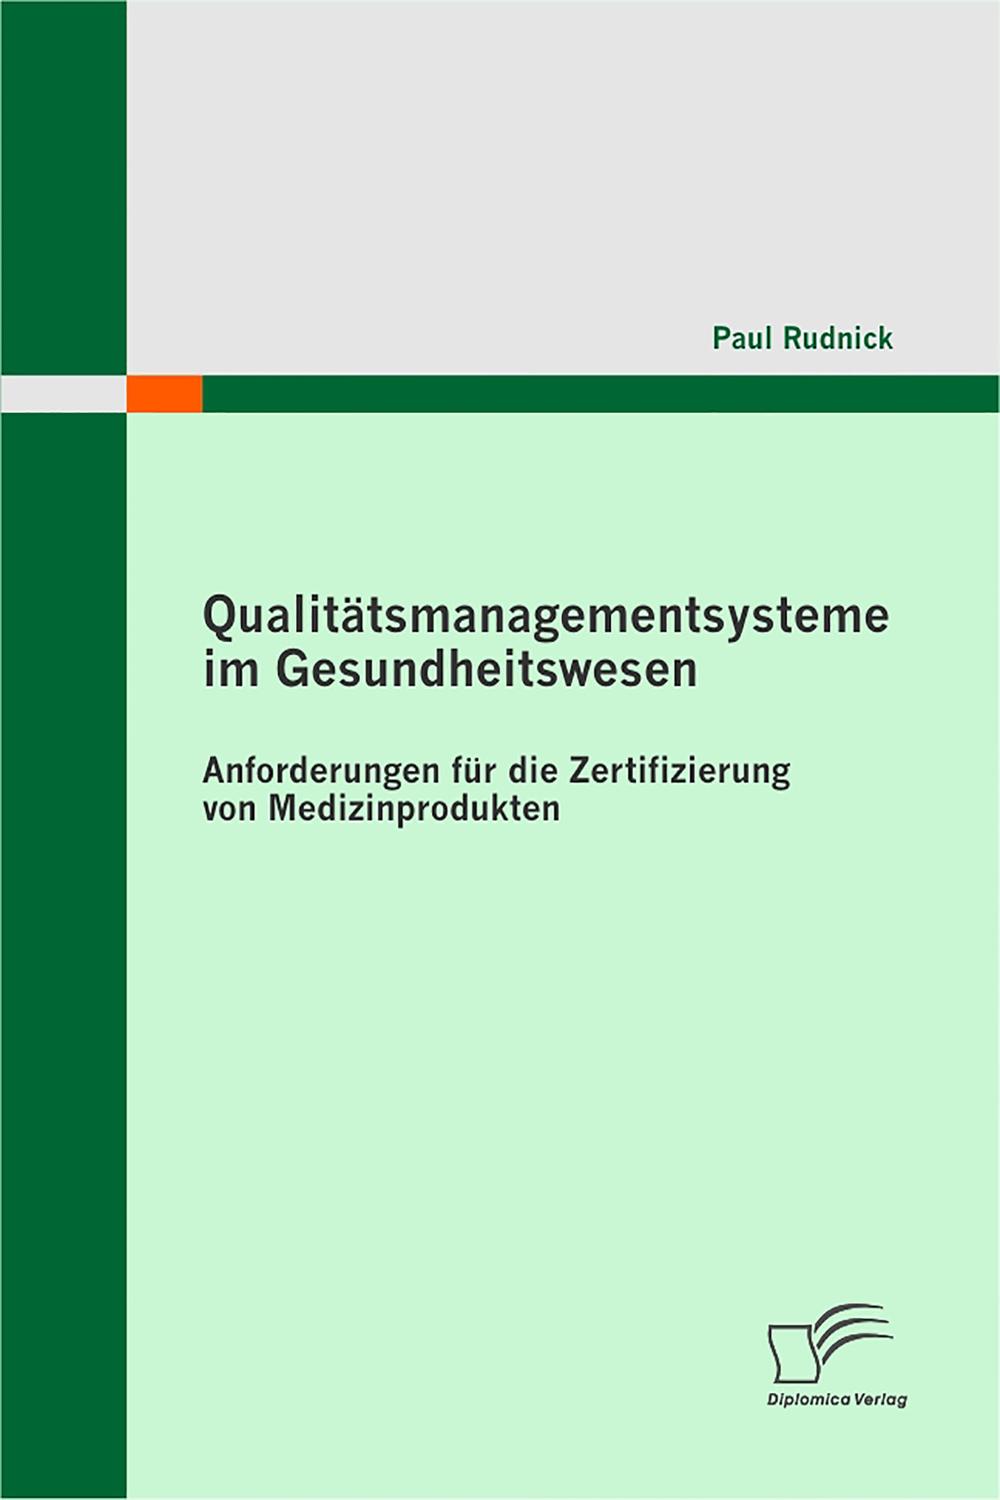 Qualitätsmanagementsysteme im Gesundheitswesen: Anforderungen für die Zertifizierung von Medizinprodukten - Paul Rudnick